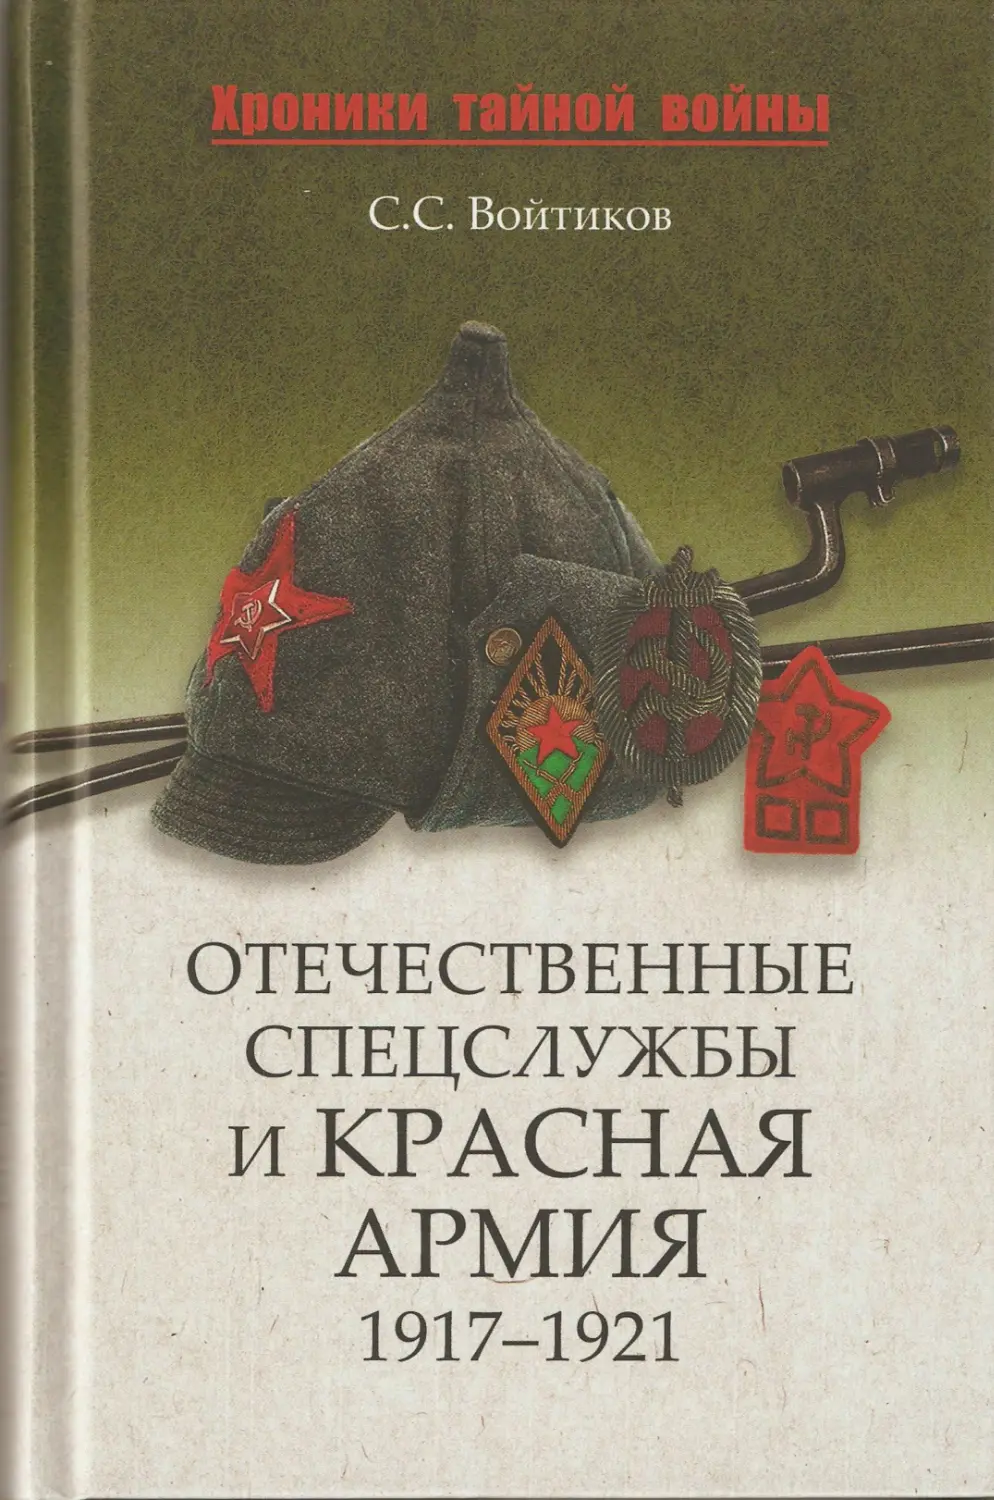 ОТЕЧЕСТВЕННЫЕ СПЕЦСЛУЖБЫ И КРАСНАЯ АРМИЯ 1917—1921